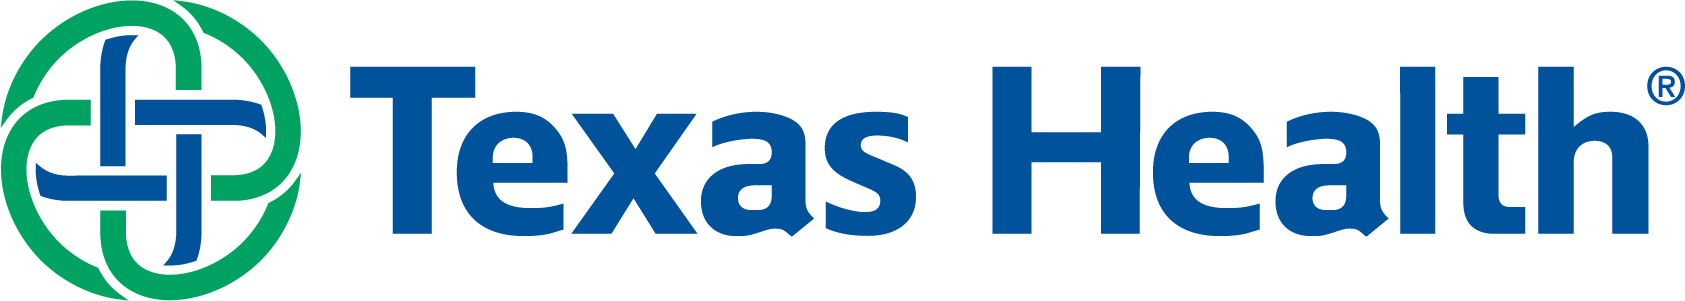 Texas Health logo